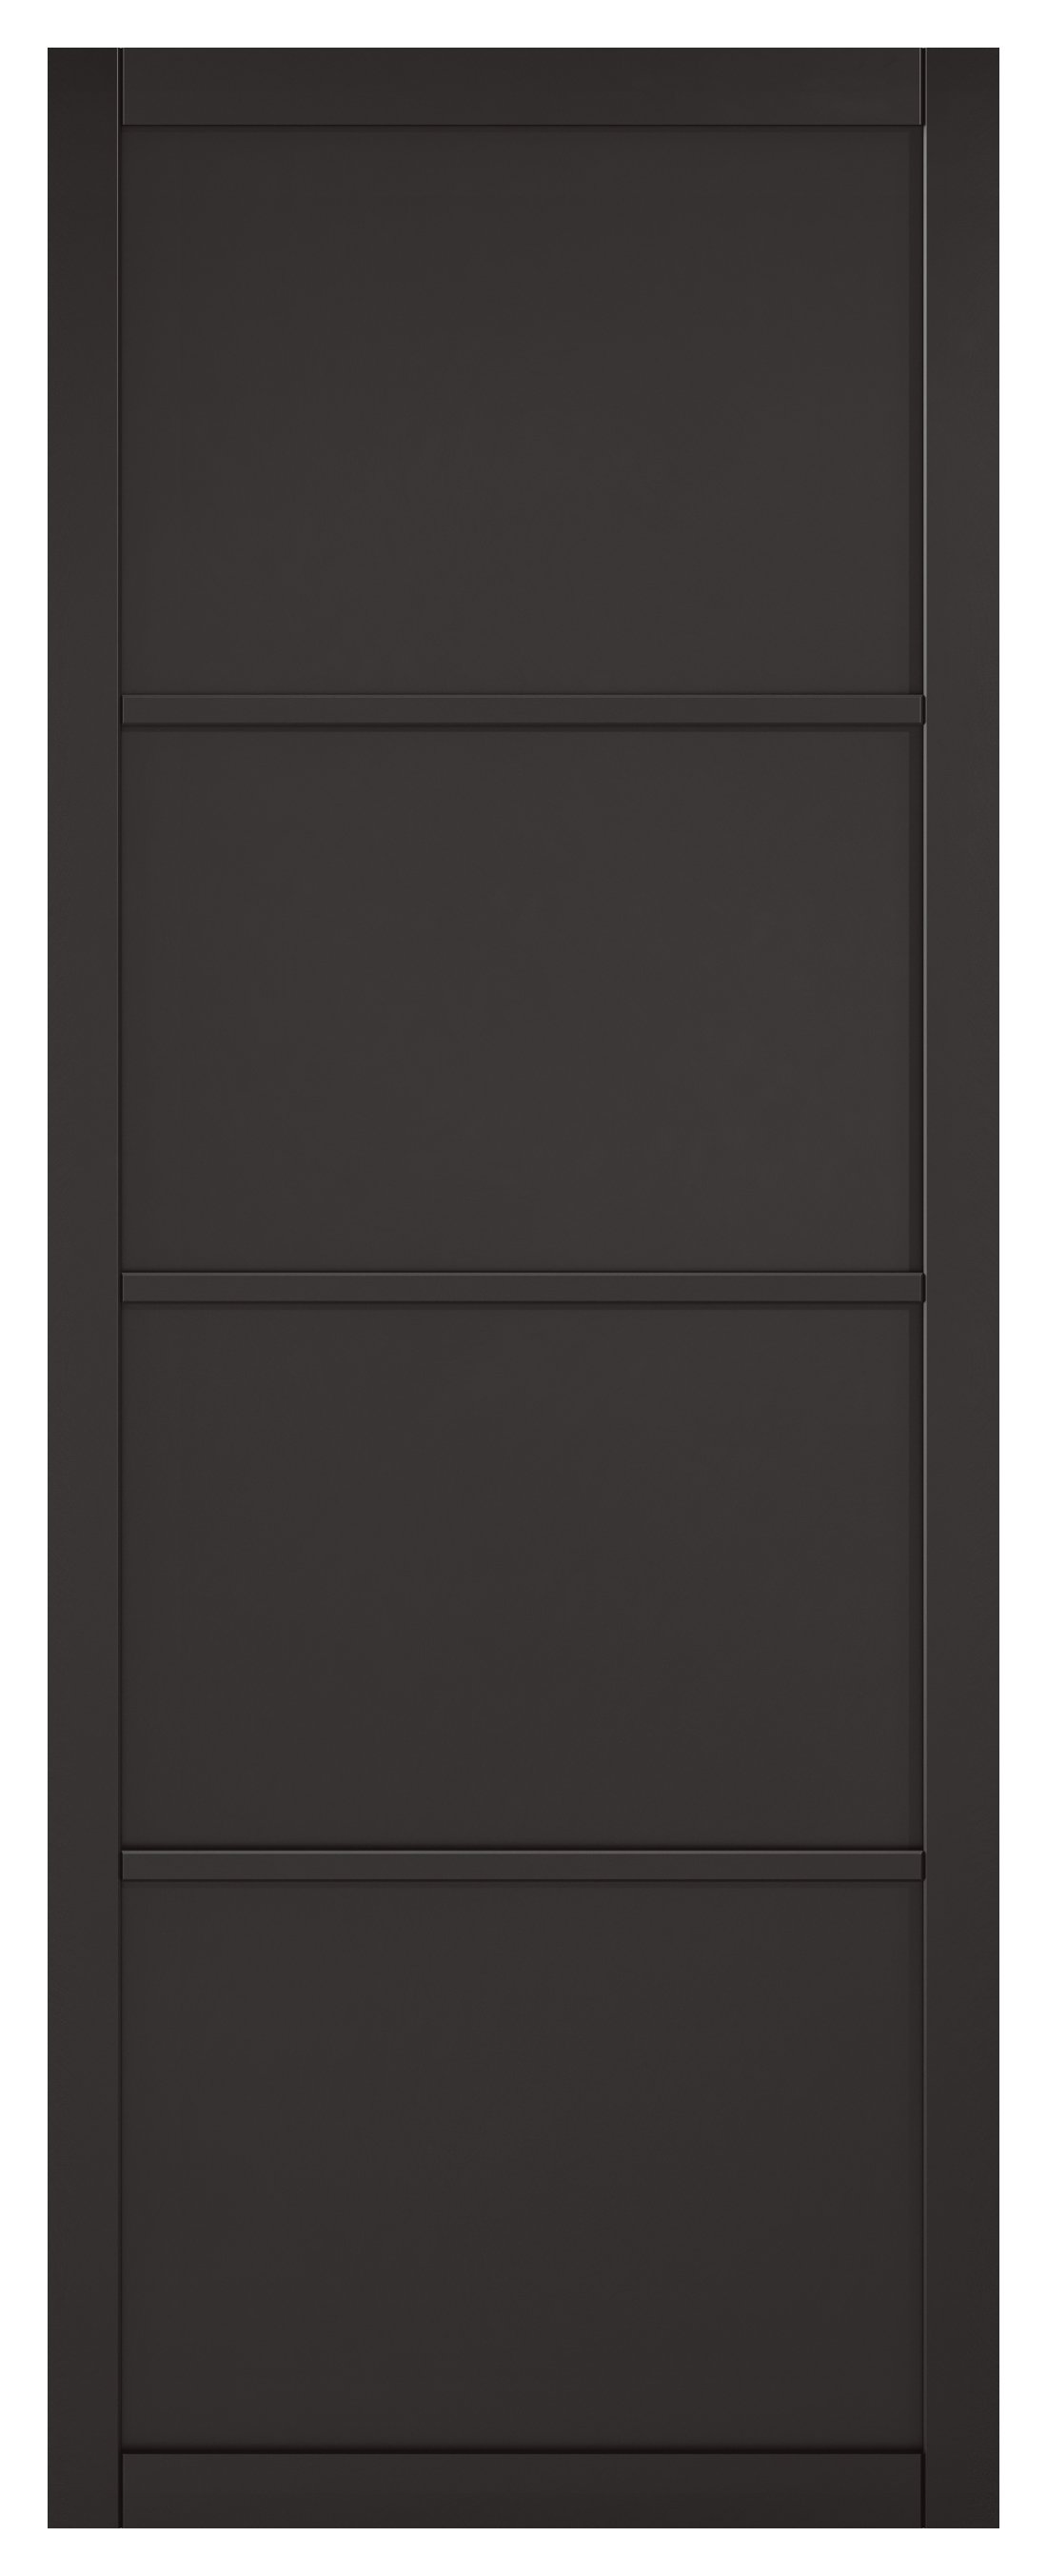 Image of LPD Internal Soho 4 Panel Primed Black Solid Core Door - 762 x 1981mm